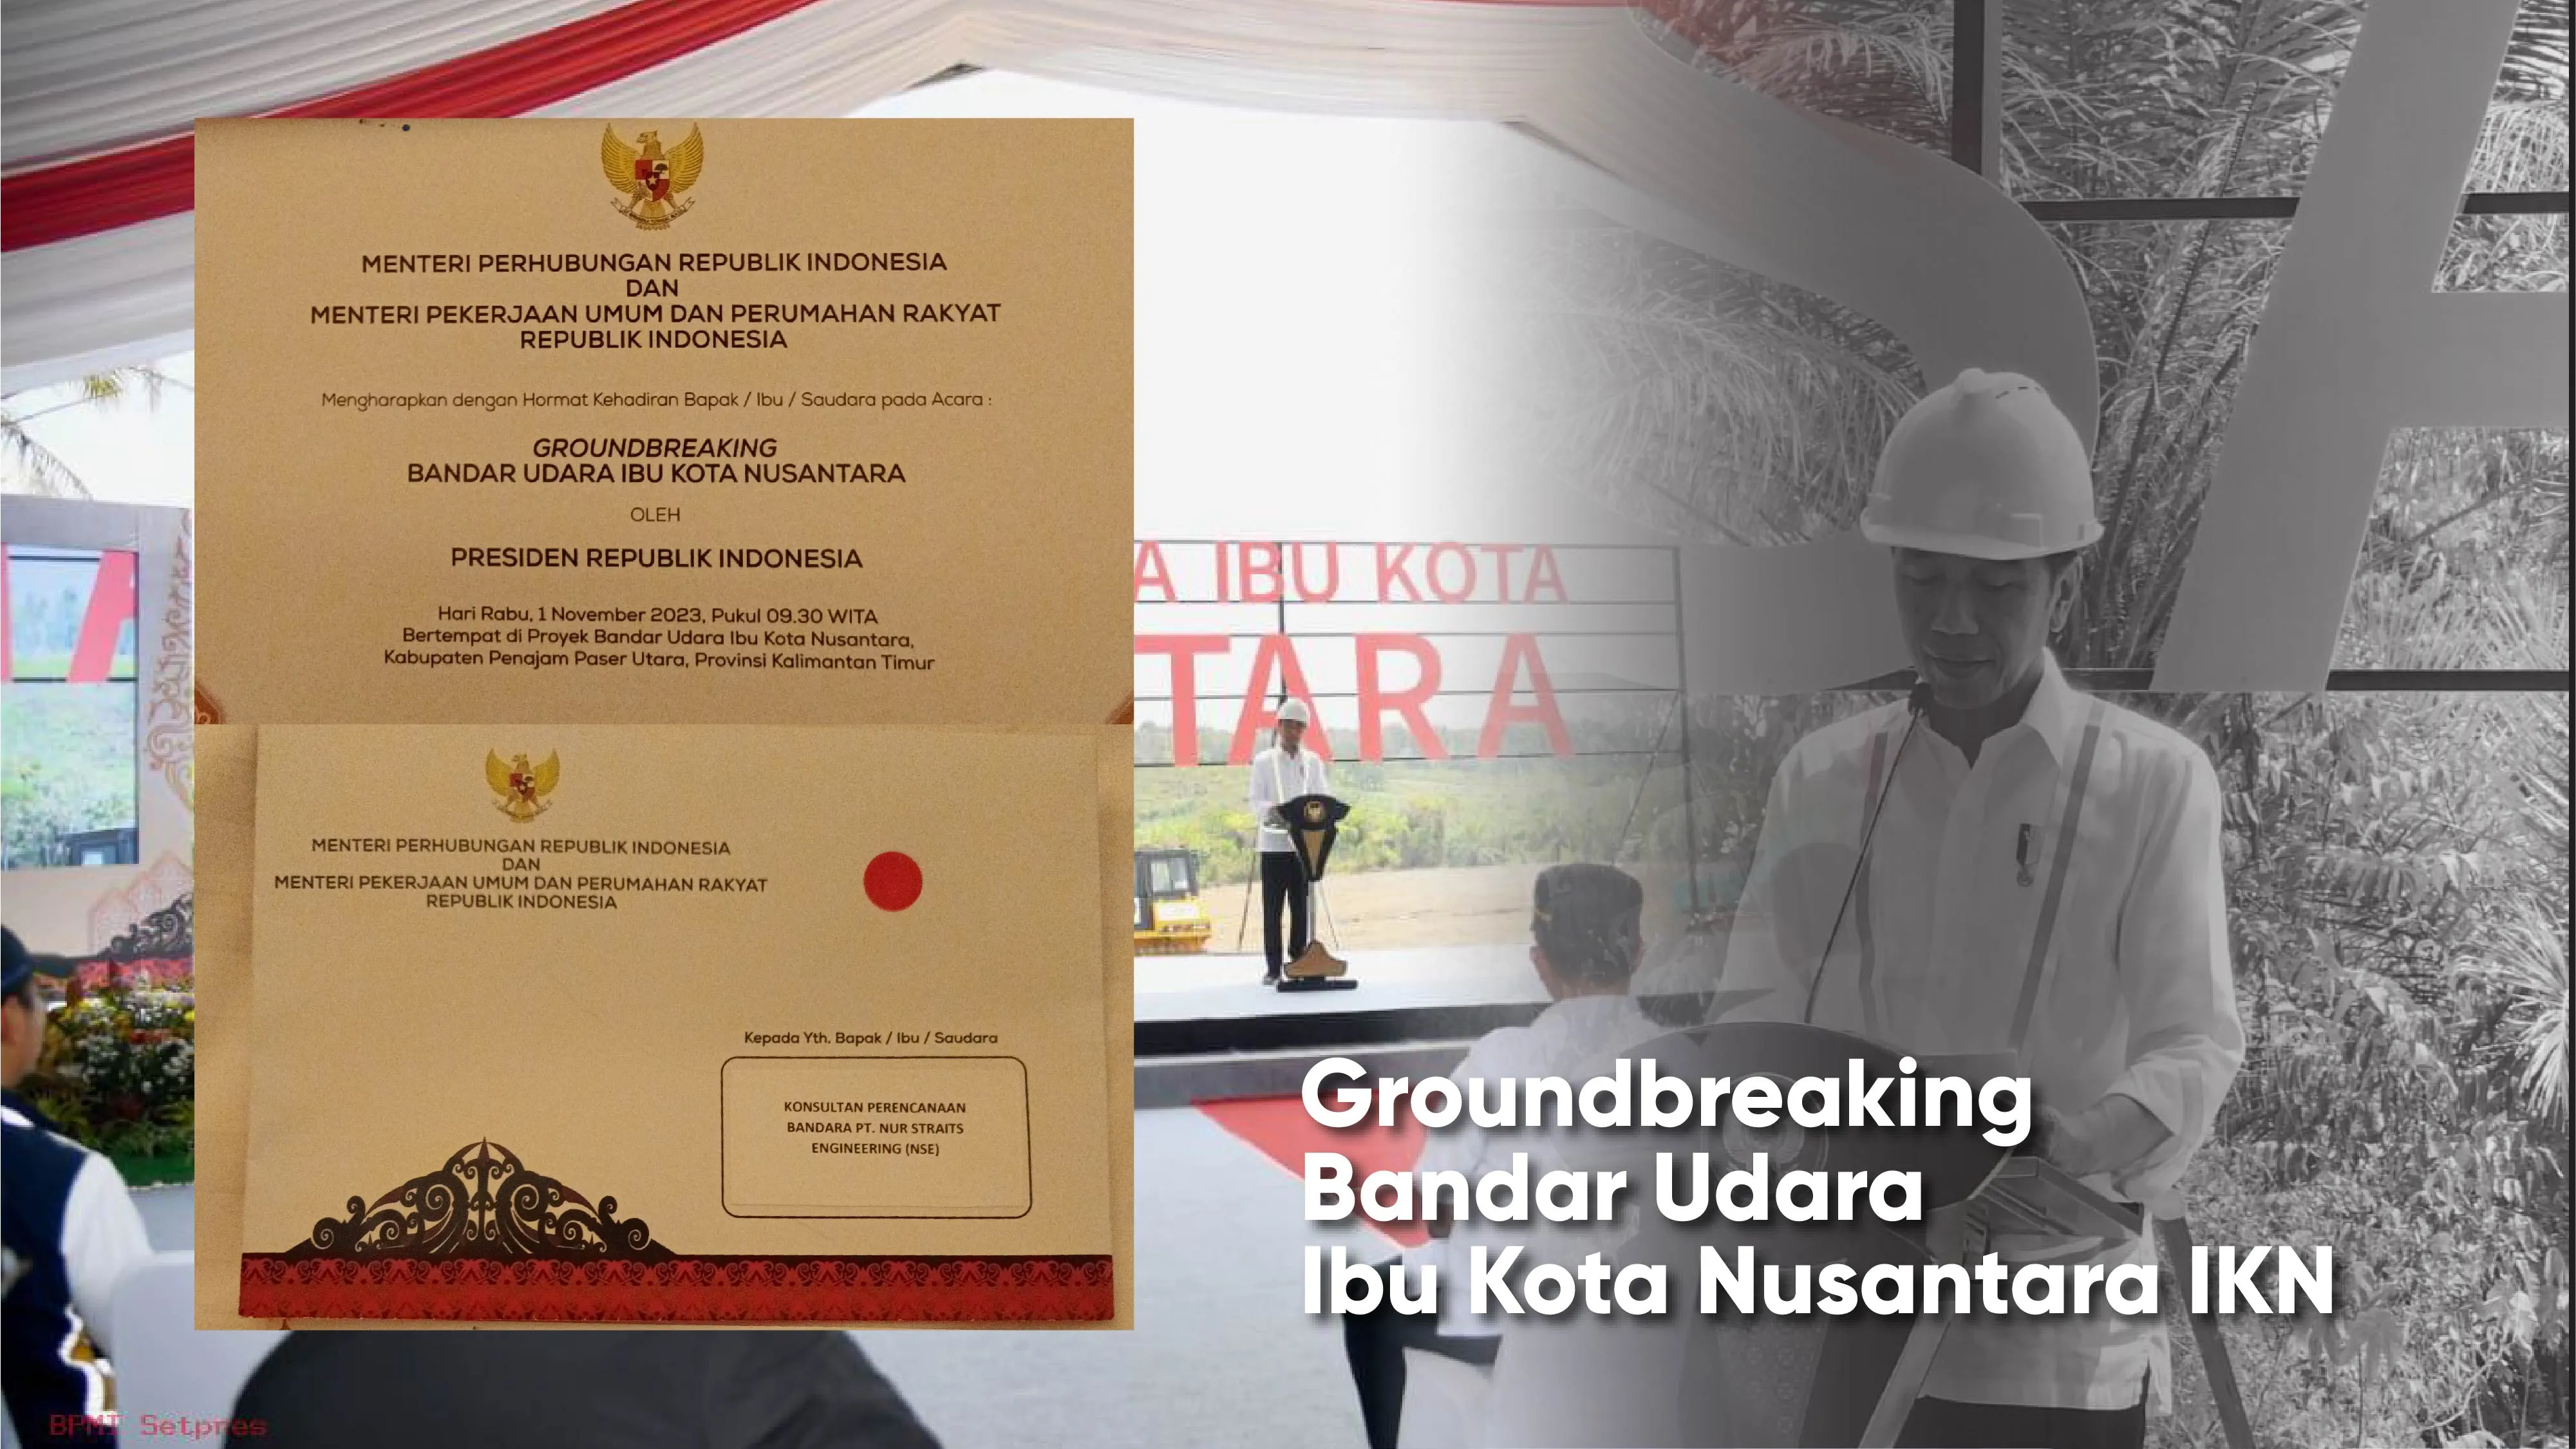 Presiden Jokowi Groundbreaking Pembangunan Bandara IKN